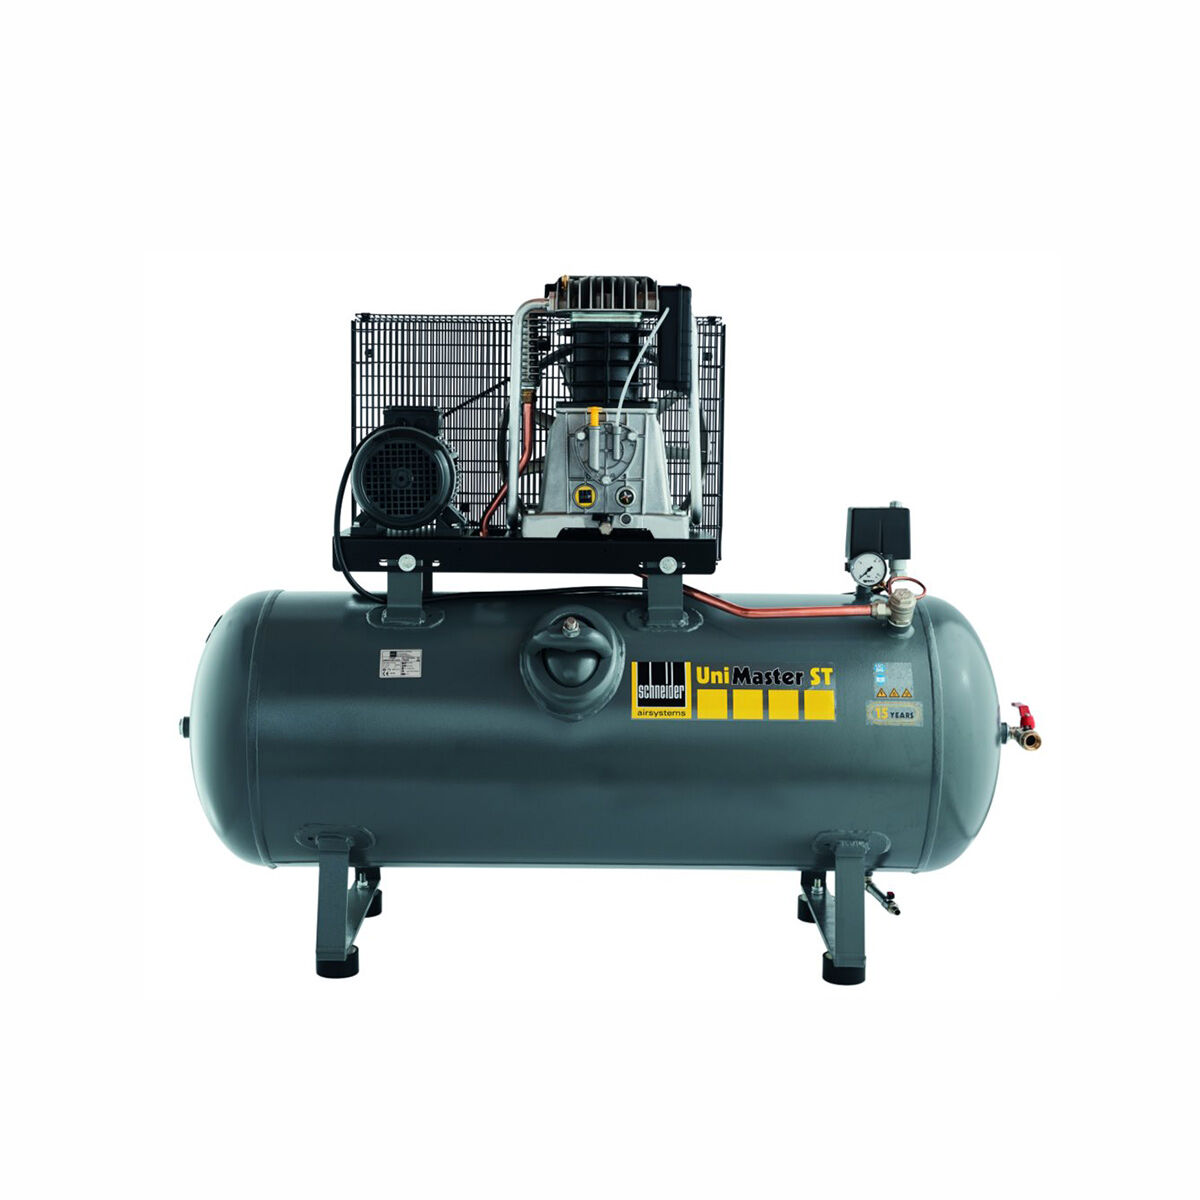 Schneider-Kompressor UNM STL 780-15-270 1121570225